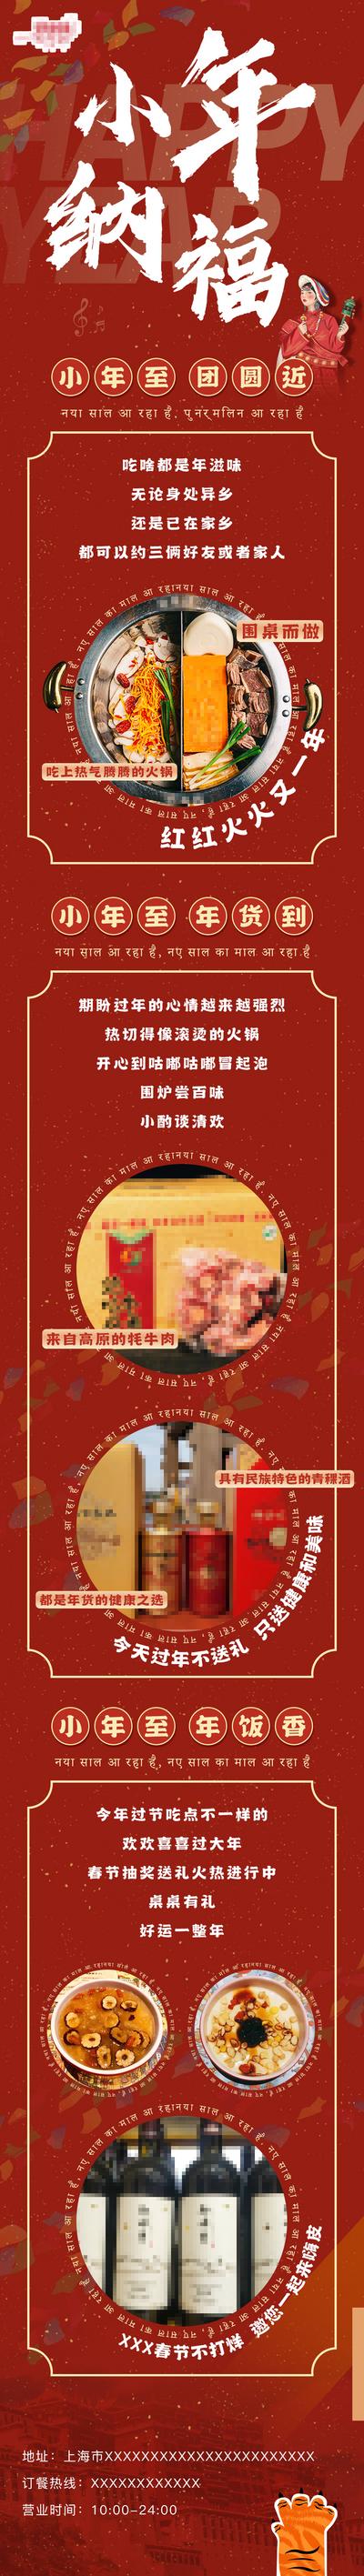 南门网 广告 海报 电商 长图 活动 节气 美食 促销 周年庆 国潮 红金 美食 火锅